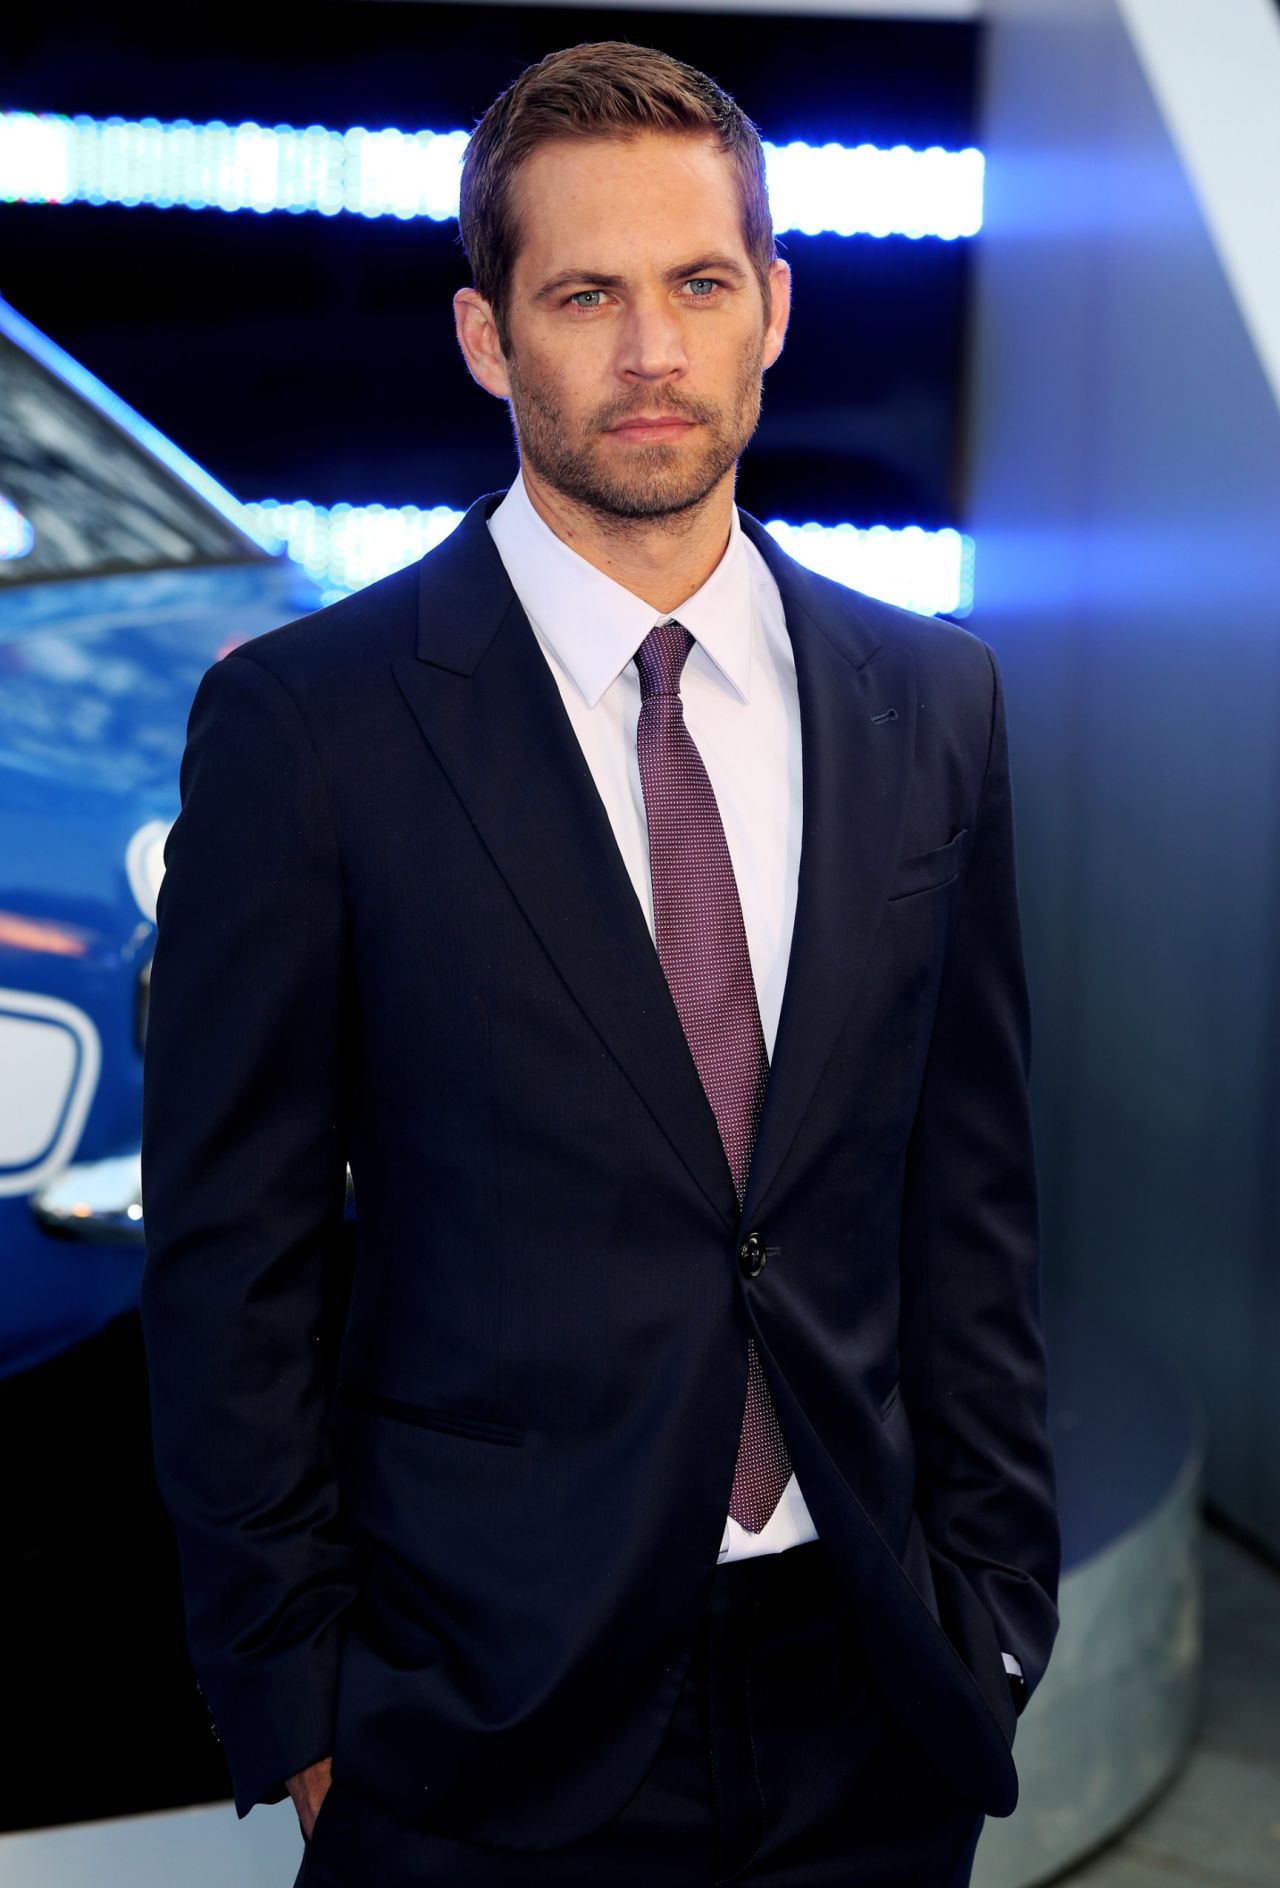 Rechtzetten Gezond tafereel Fast & Furious' star Paul Walker killed in car crash | CNN